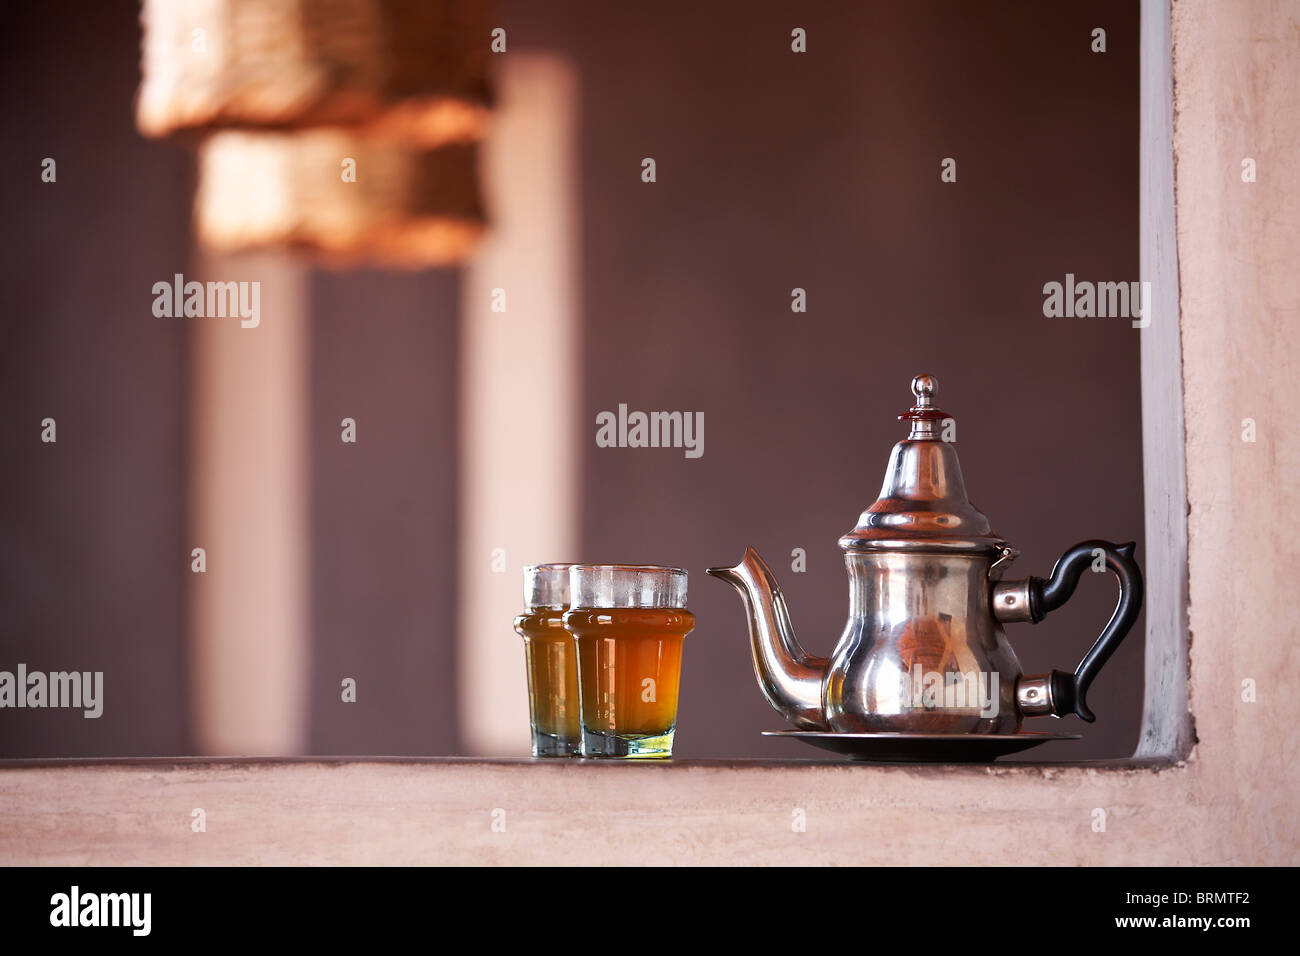 tetera marroqui  Tea pots, Silver tea set, Silver teapot